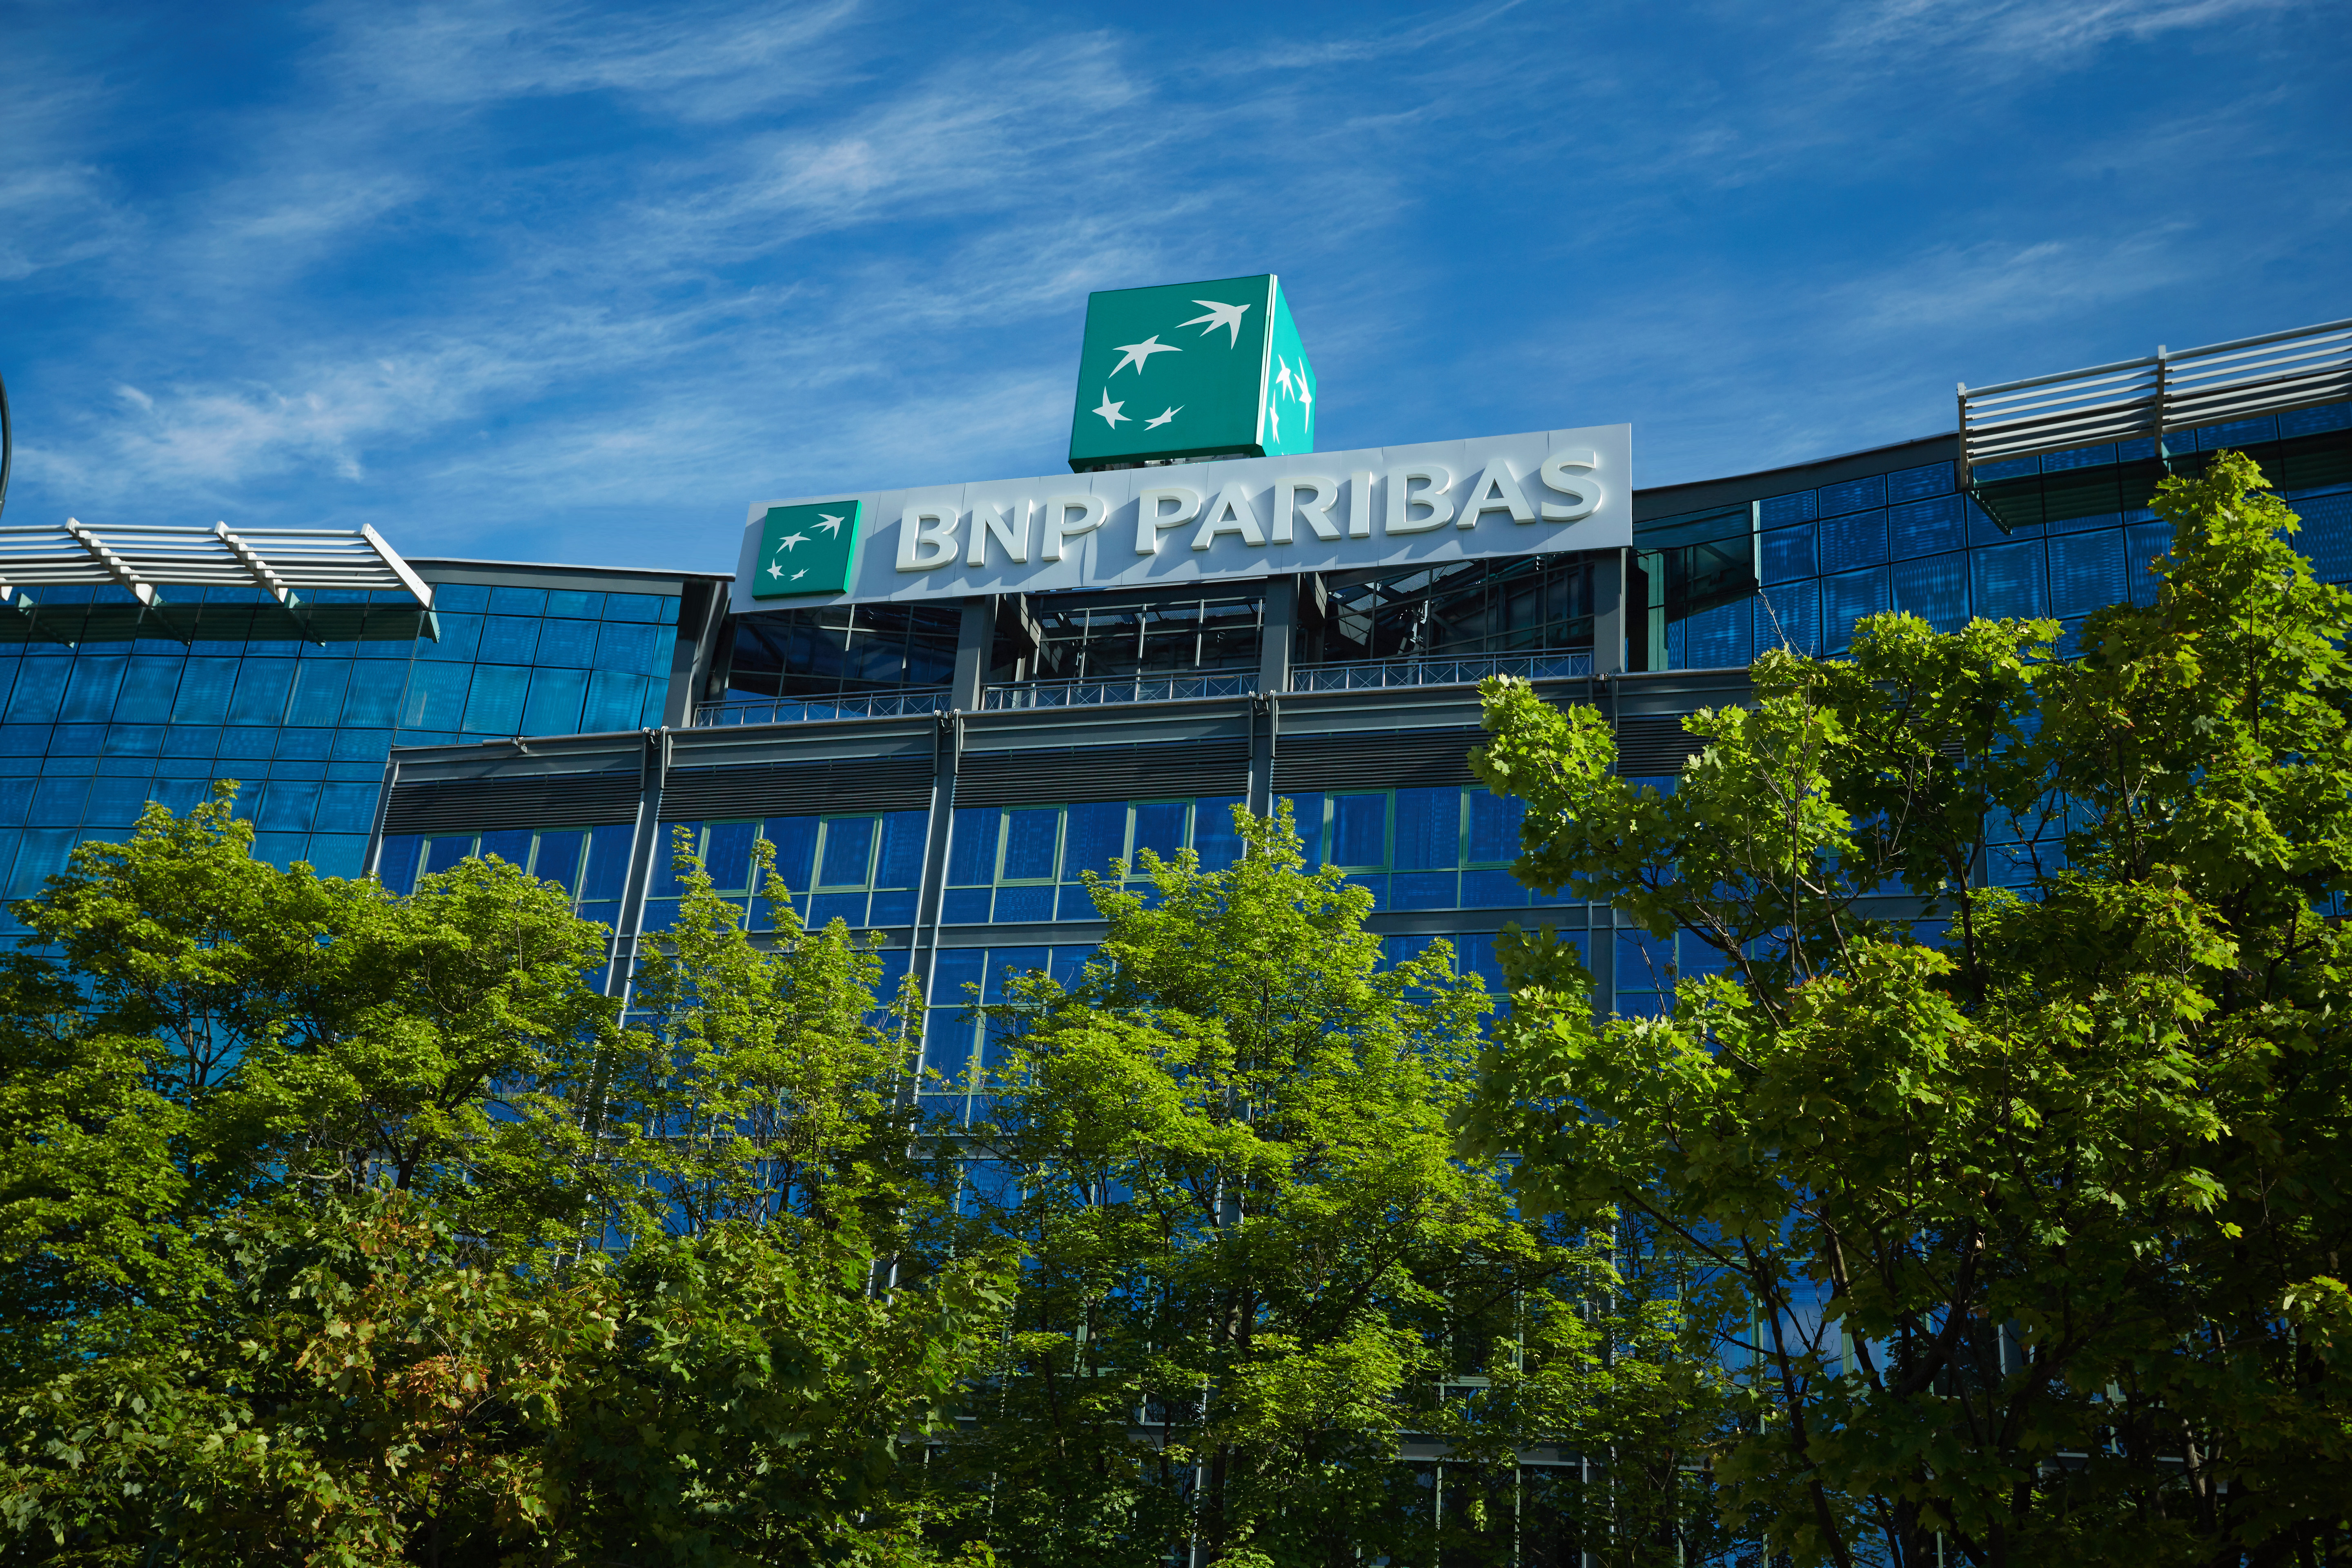 BNP - Bank BNP Paribas rusza z nową inicjatywą dla młodych firm technologicznych. Od teraz mogą skorzystać z rozwiązań do tej pory dla nich niedostępnych, przeznaczonych wcześniej jedynie dla korporacji